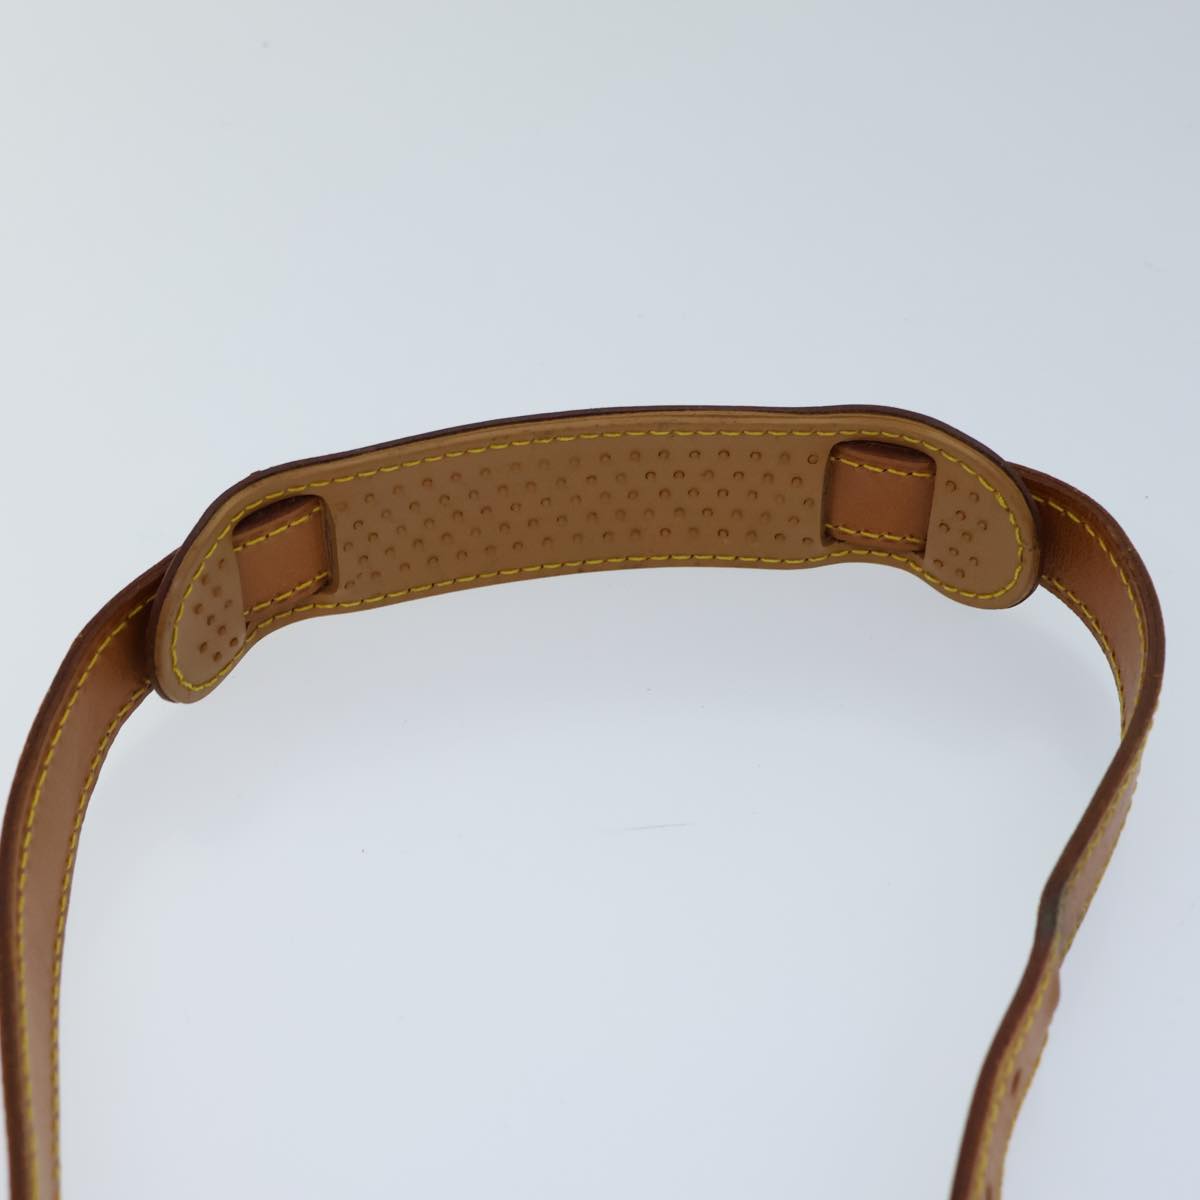 LOUIS VUITTON Adjustable Shoulder Strap Leather 36.6""-43.7"" Beige Auth 72732